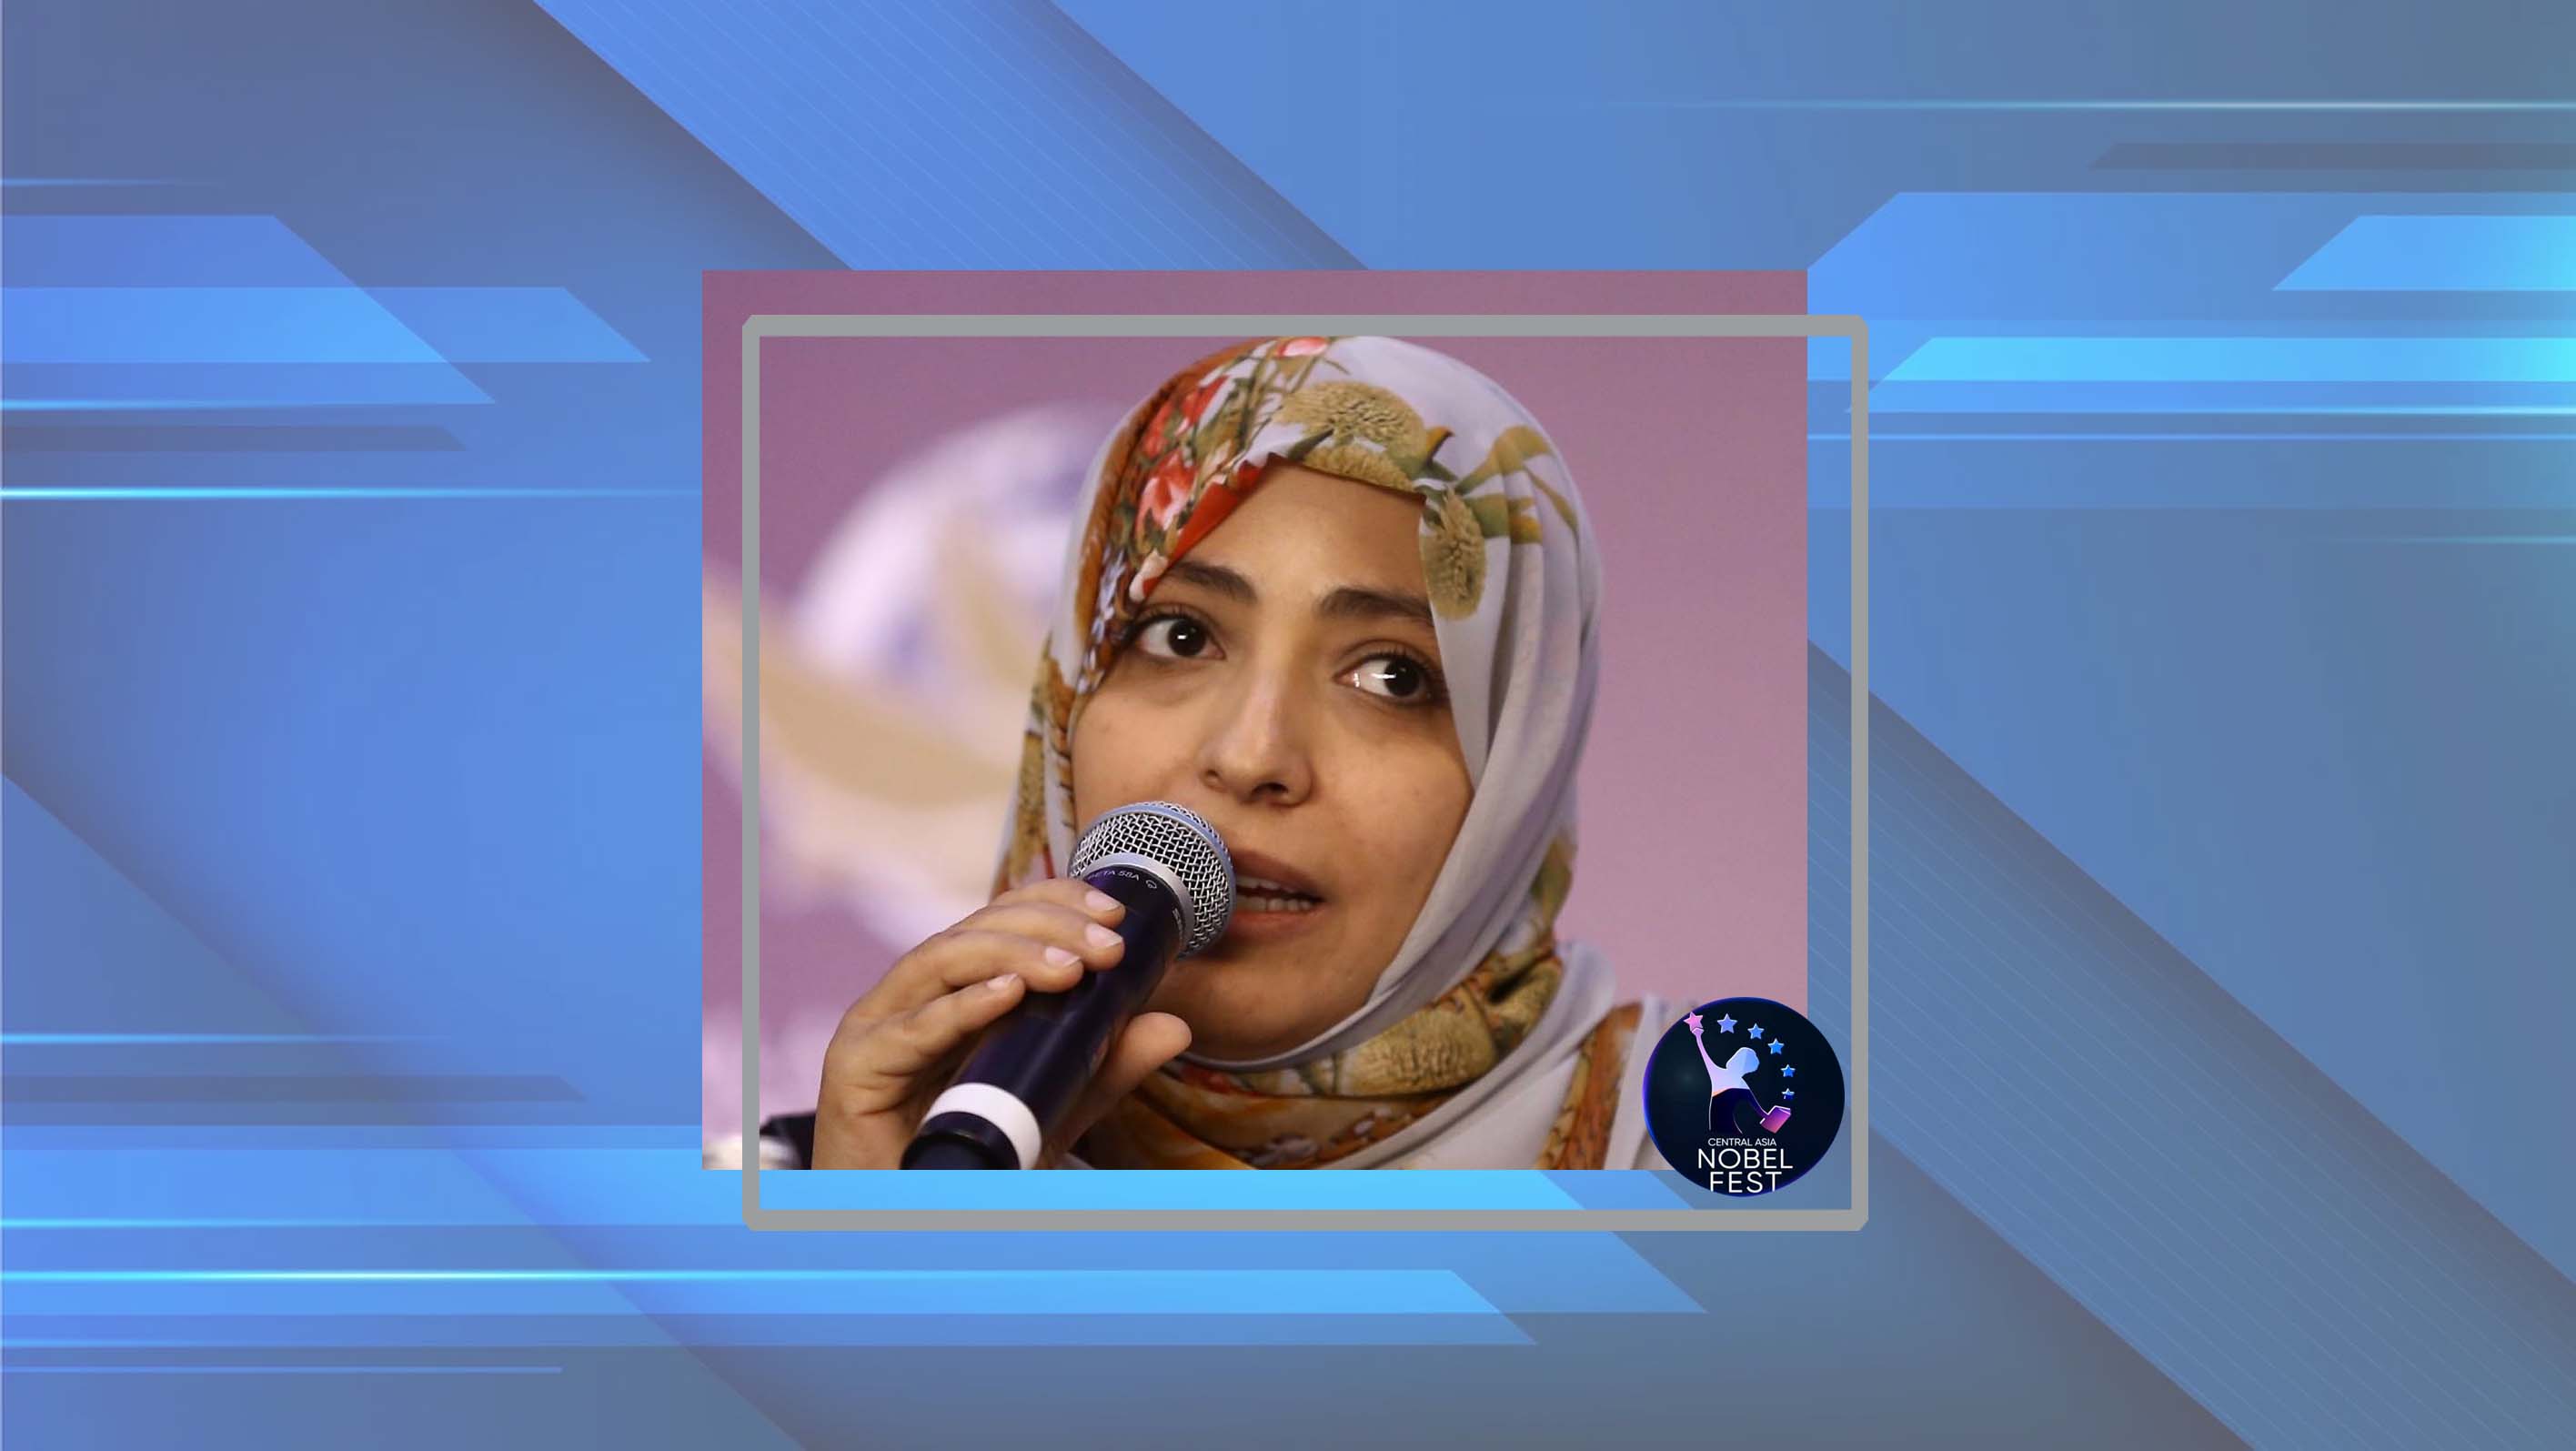 Mrs. Karman's speech at the Nobel Festival for Asia